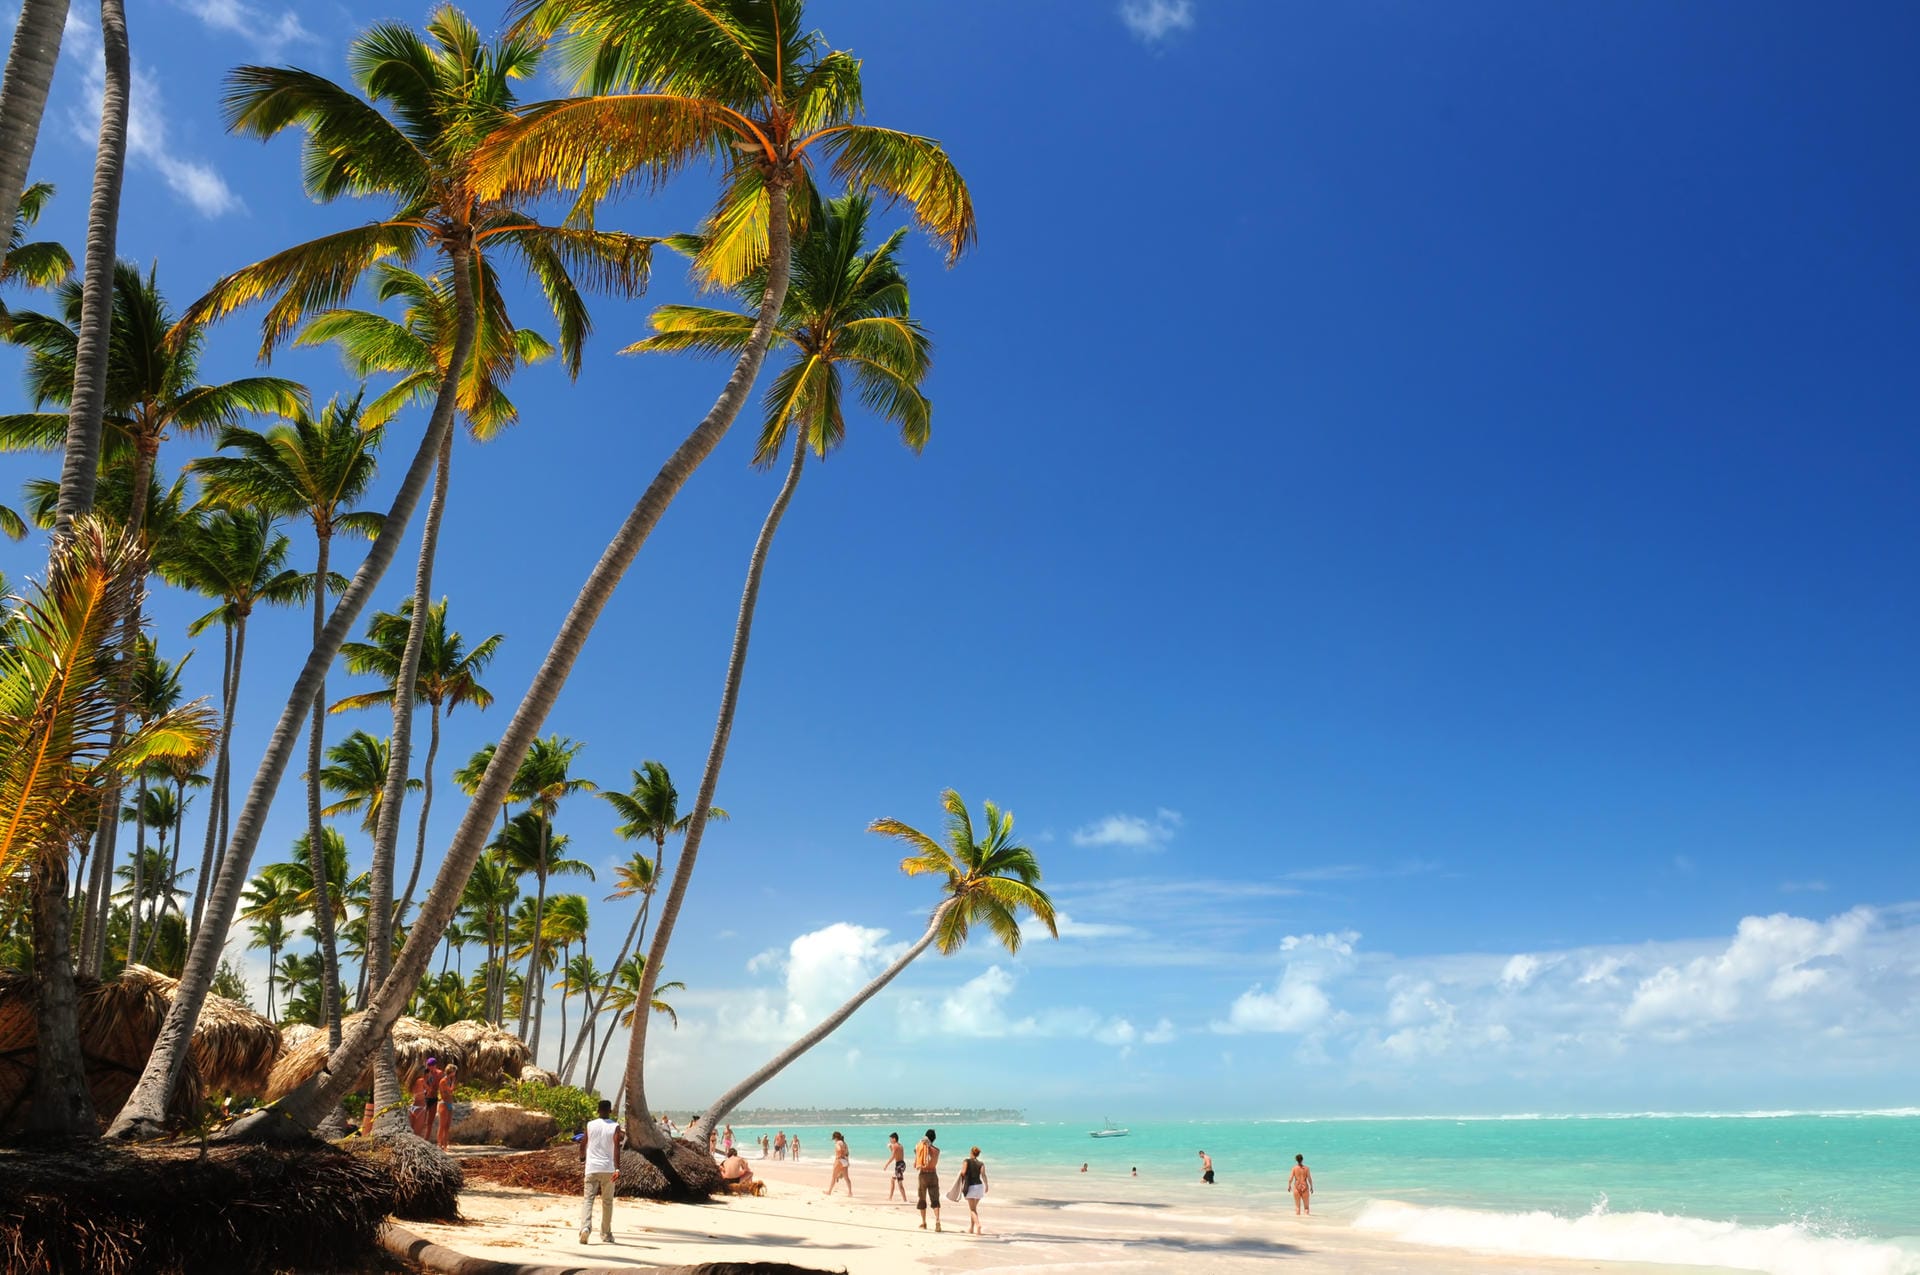 Playa Bávaro: Am neun Kilometer langen Sandstrand der Dominikanischen Republik können Sie entspannen oder auf einem Tretboot übers Wasser fahren.